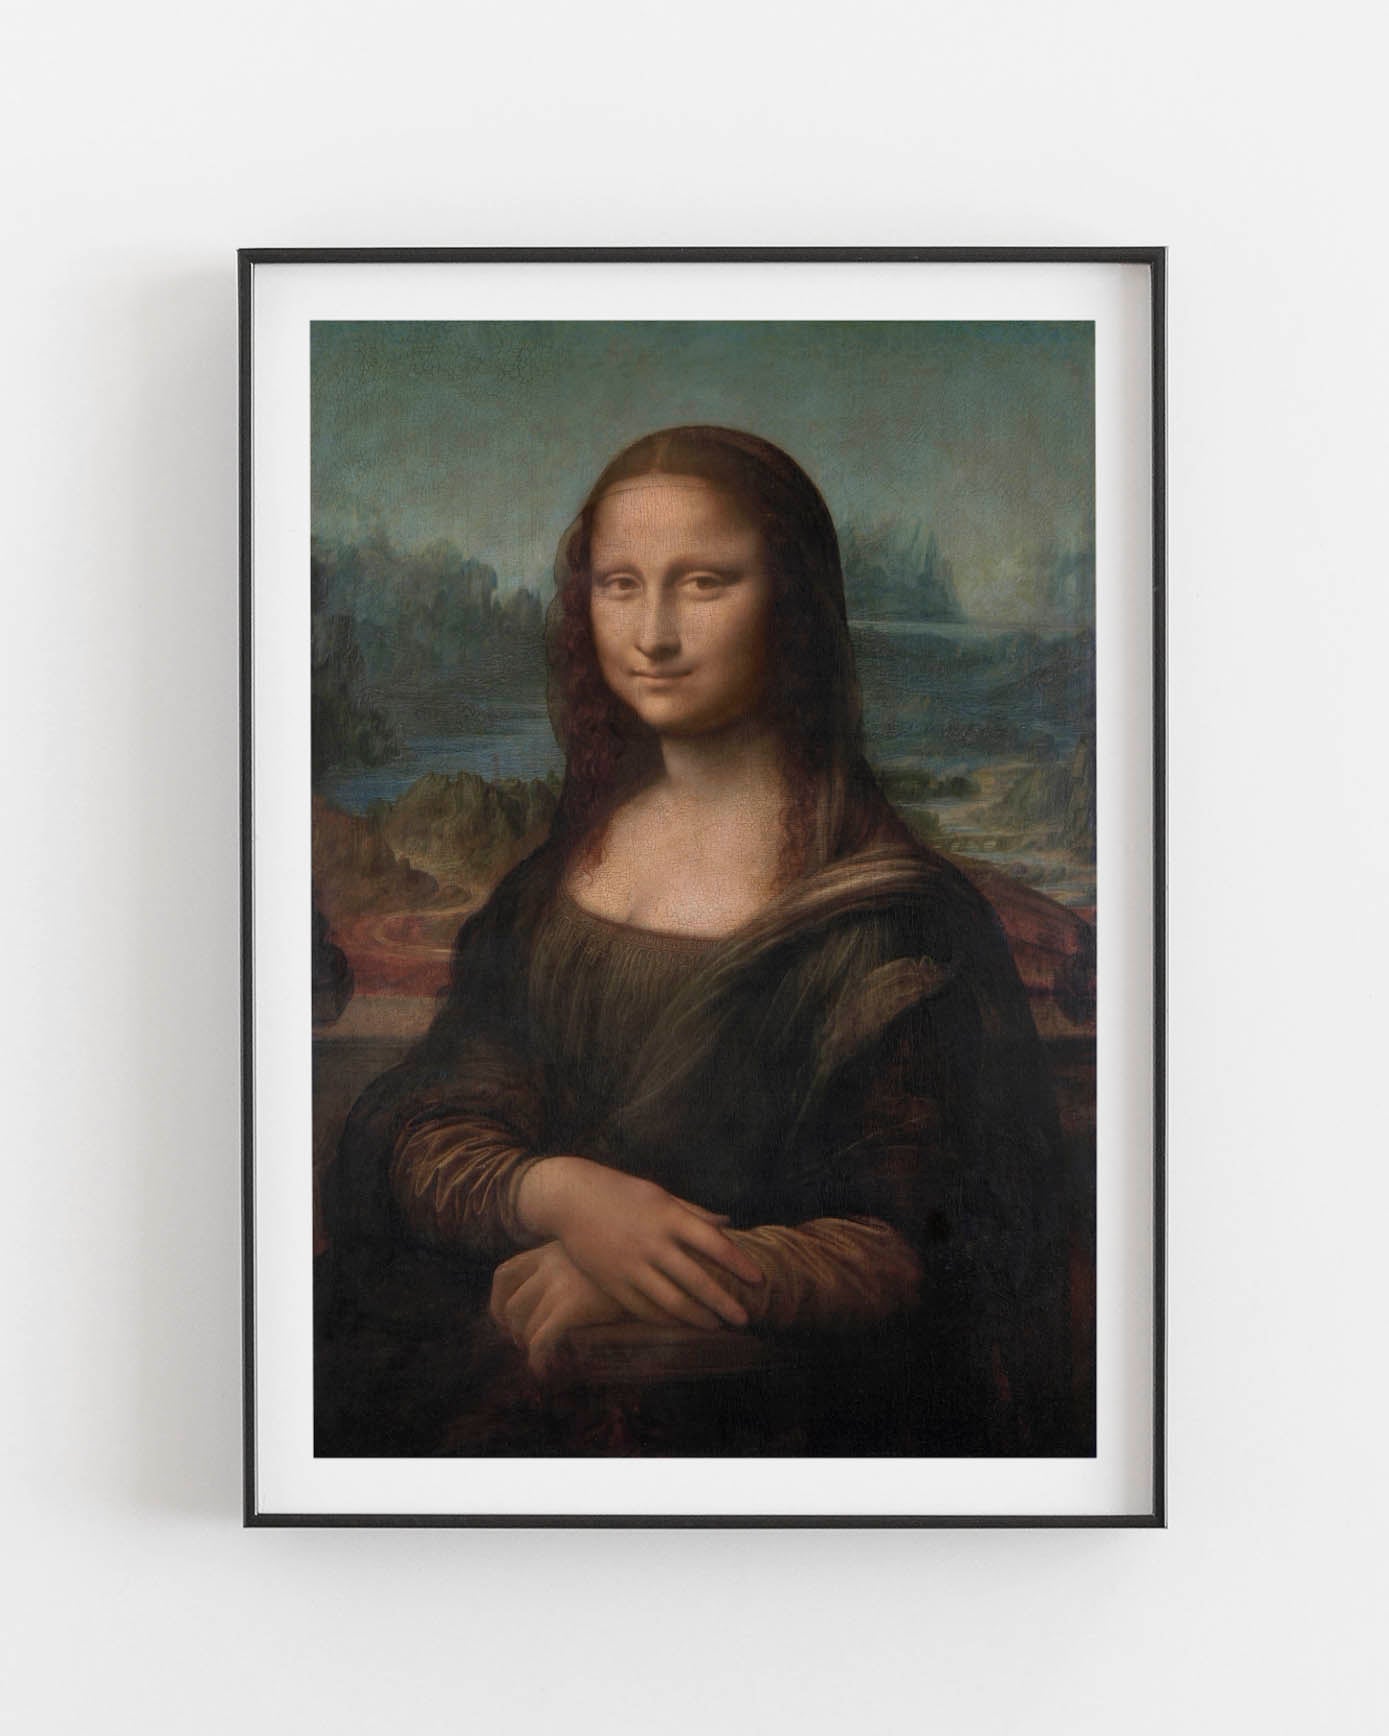 Mona Lisa poster